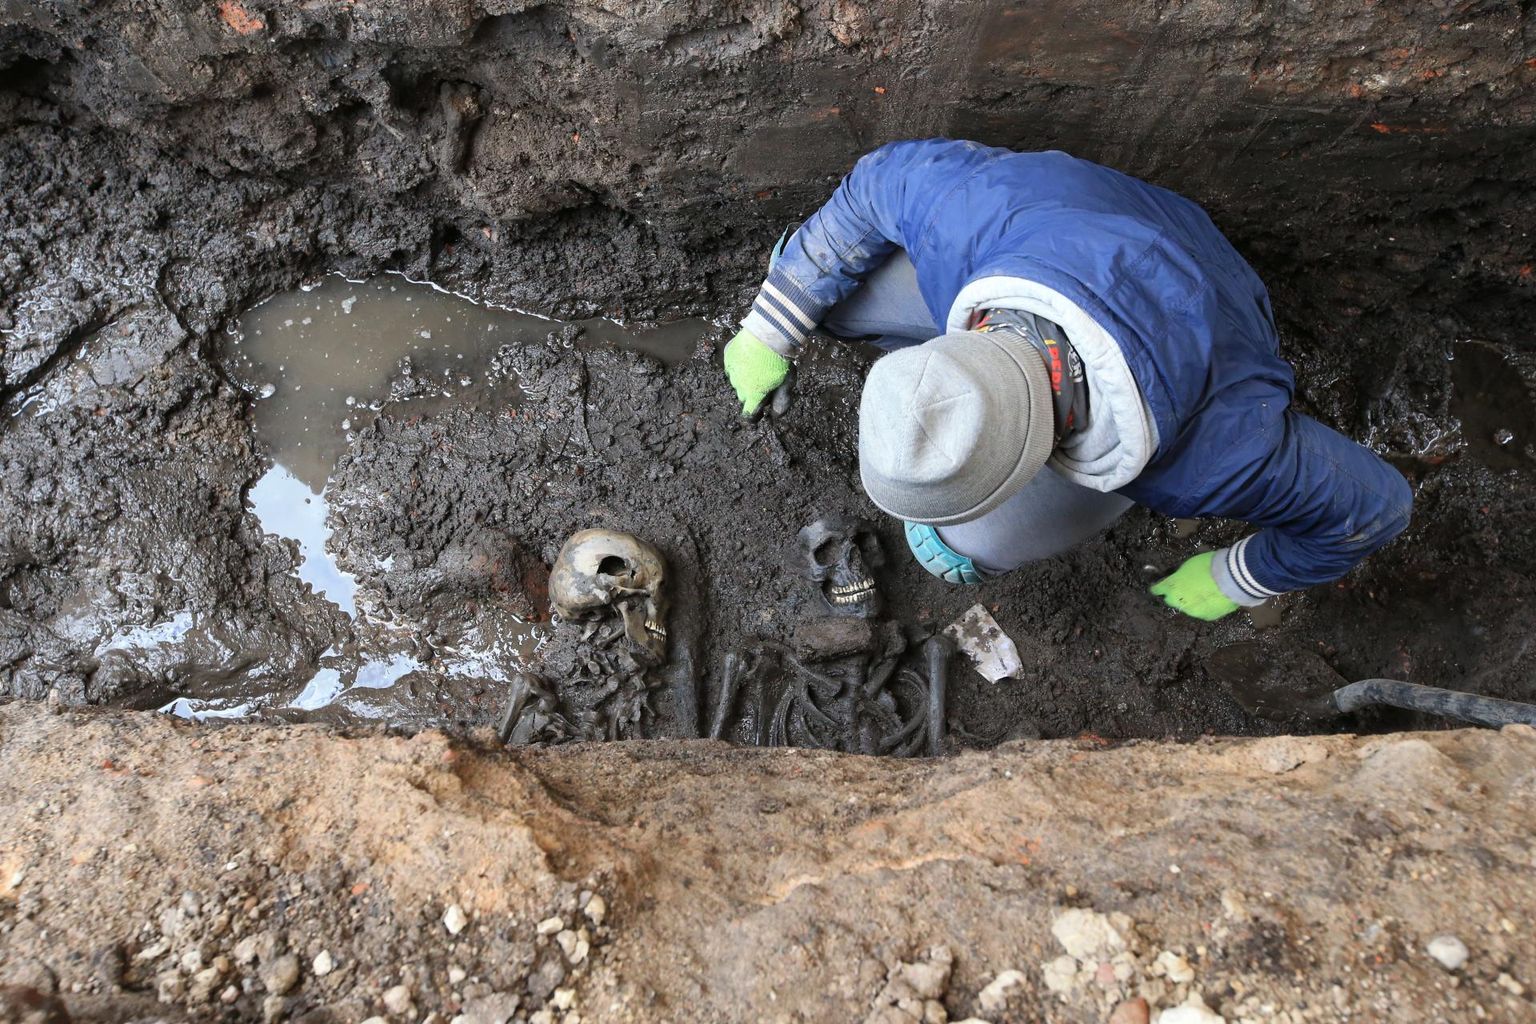 Kaks noort meest Oa tänava all hauas, juba 300 aastat. Kõrval 21. sajandi arheoloogiatudeng Sander Nuut oma töövahenditega toimetamas.